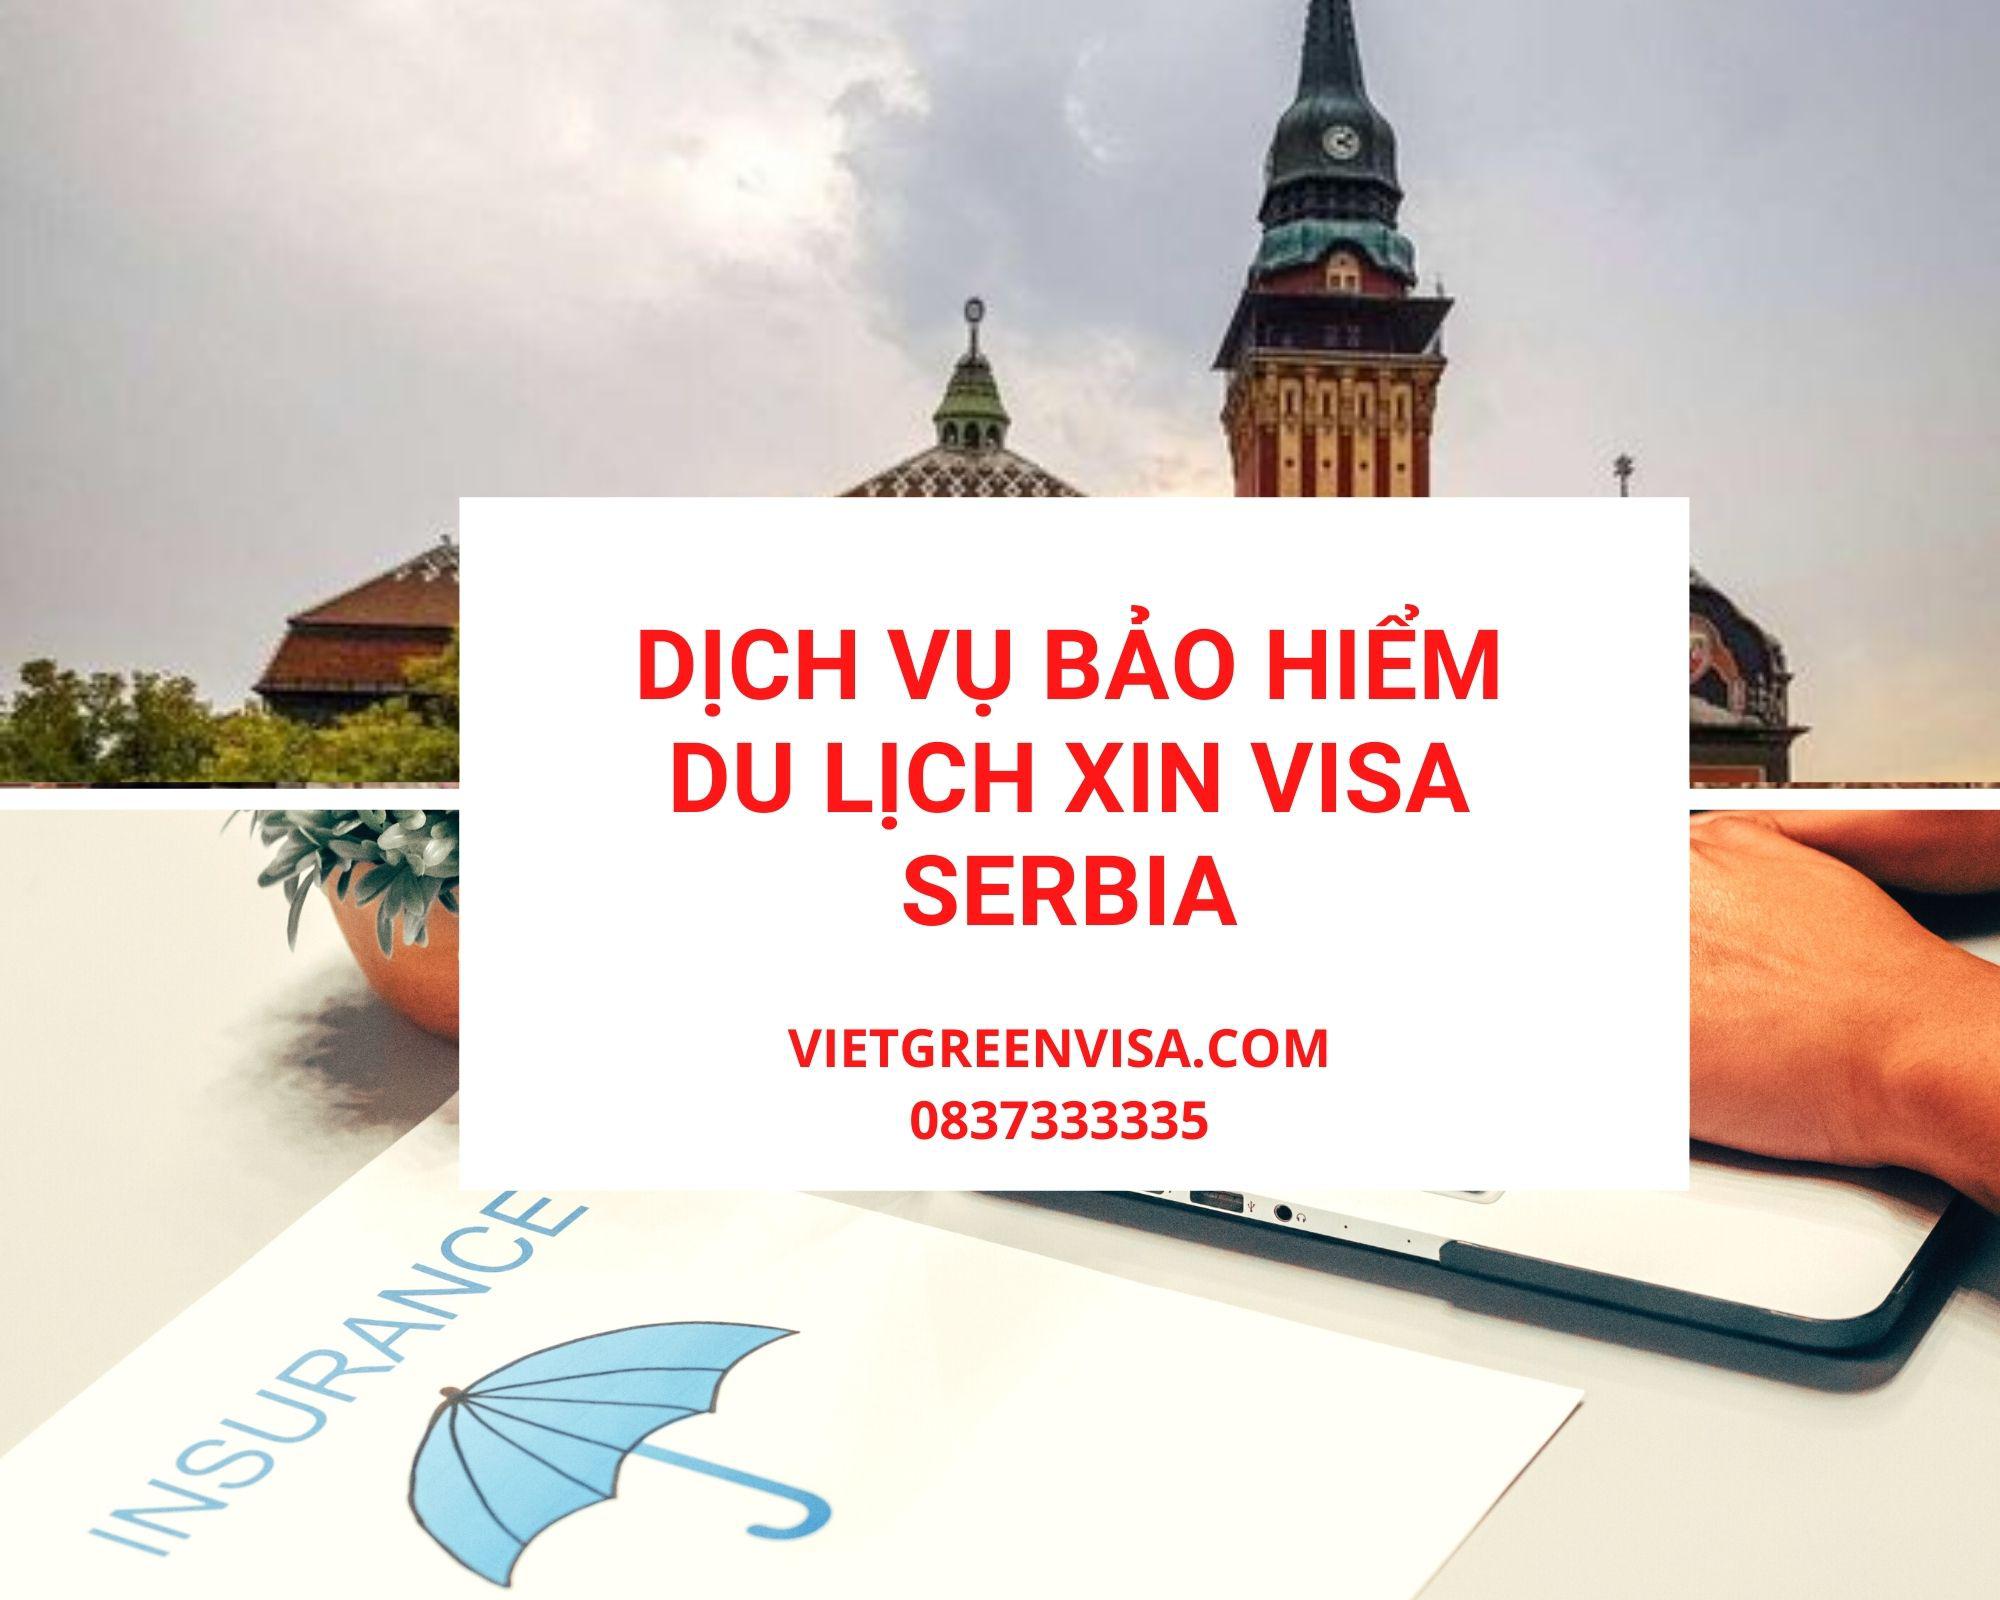 Dịch vụ bảo hiểm du lịch xin visa Serbia giá tốt nhất